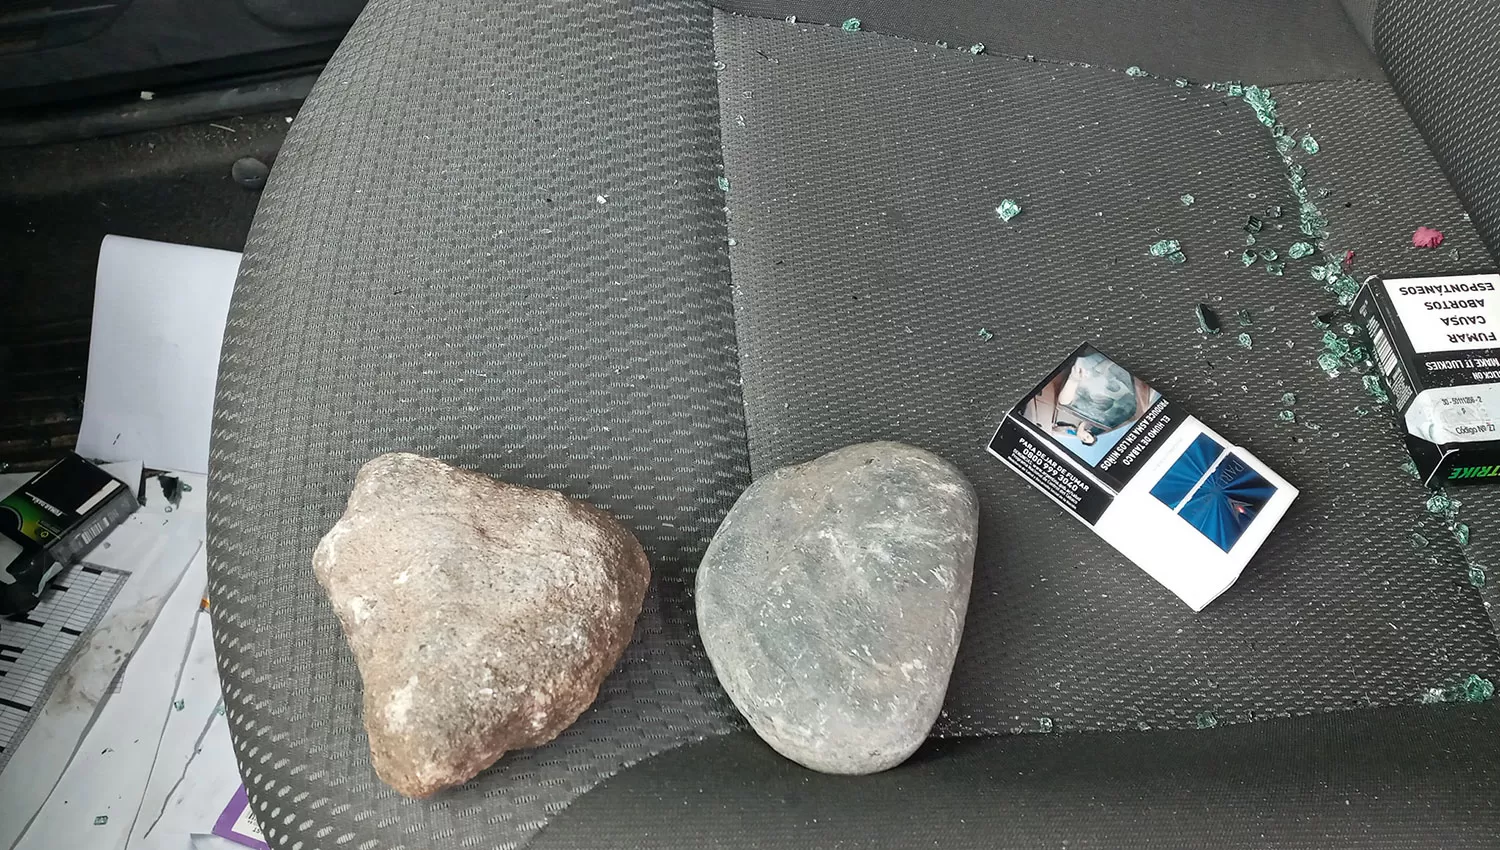 Las piedras que rompieron los cristales de la camioneta de Granger.